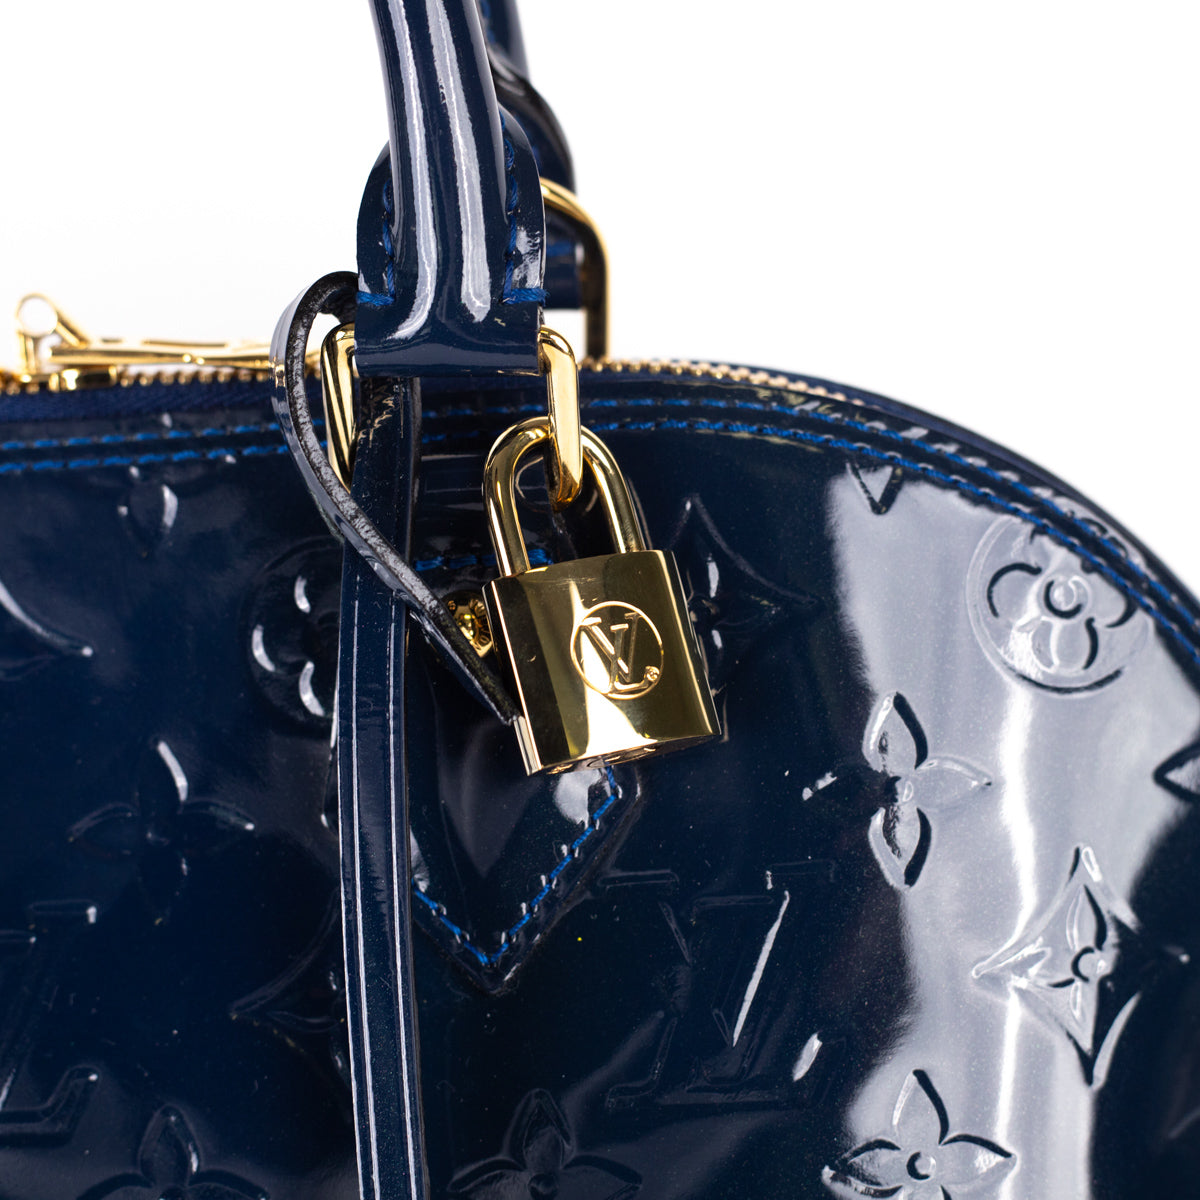 LOUIS VUITTON Alma PM Monogram Vernis Leather Satchel Bag Blue